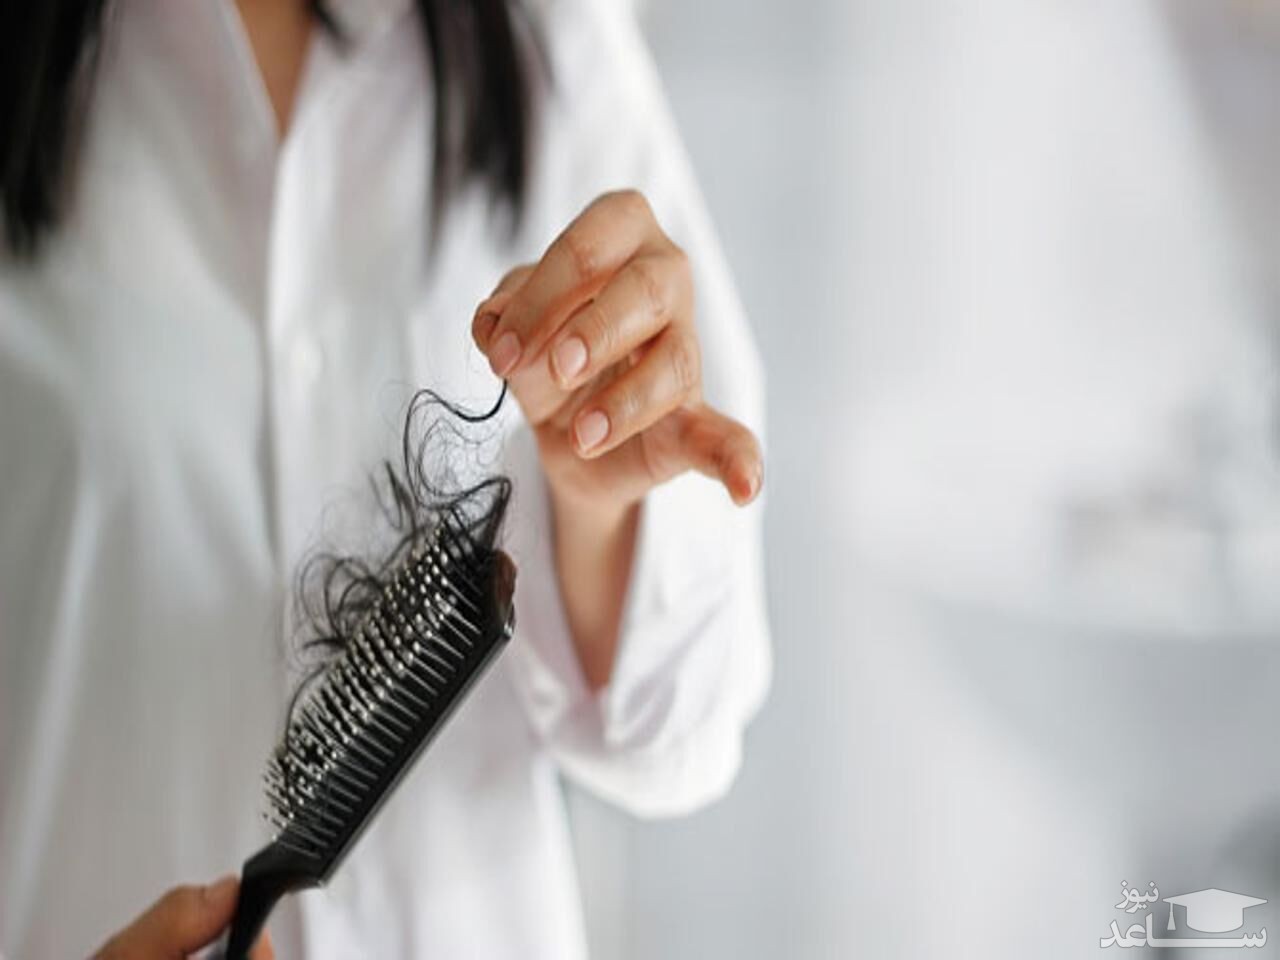 آیا می توان جلوی ریزش موی ناشی از شیمی درمانی را گرفت؟